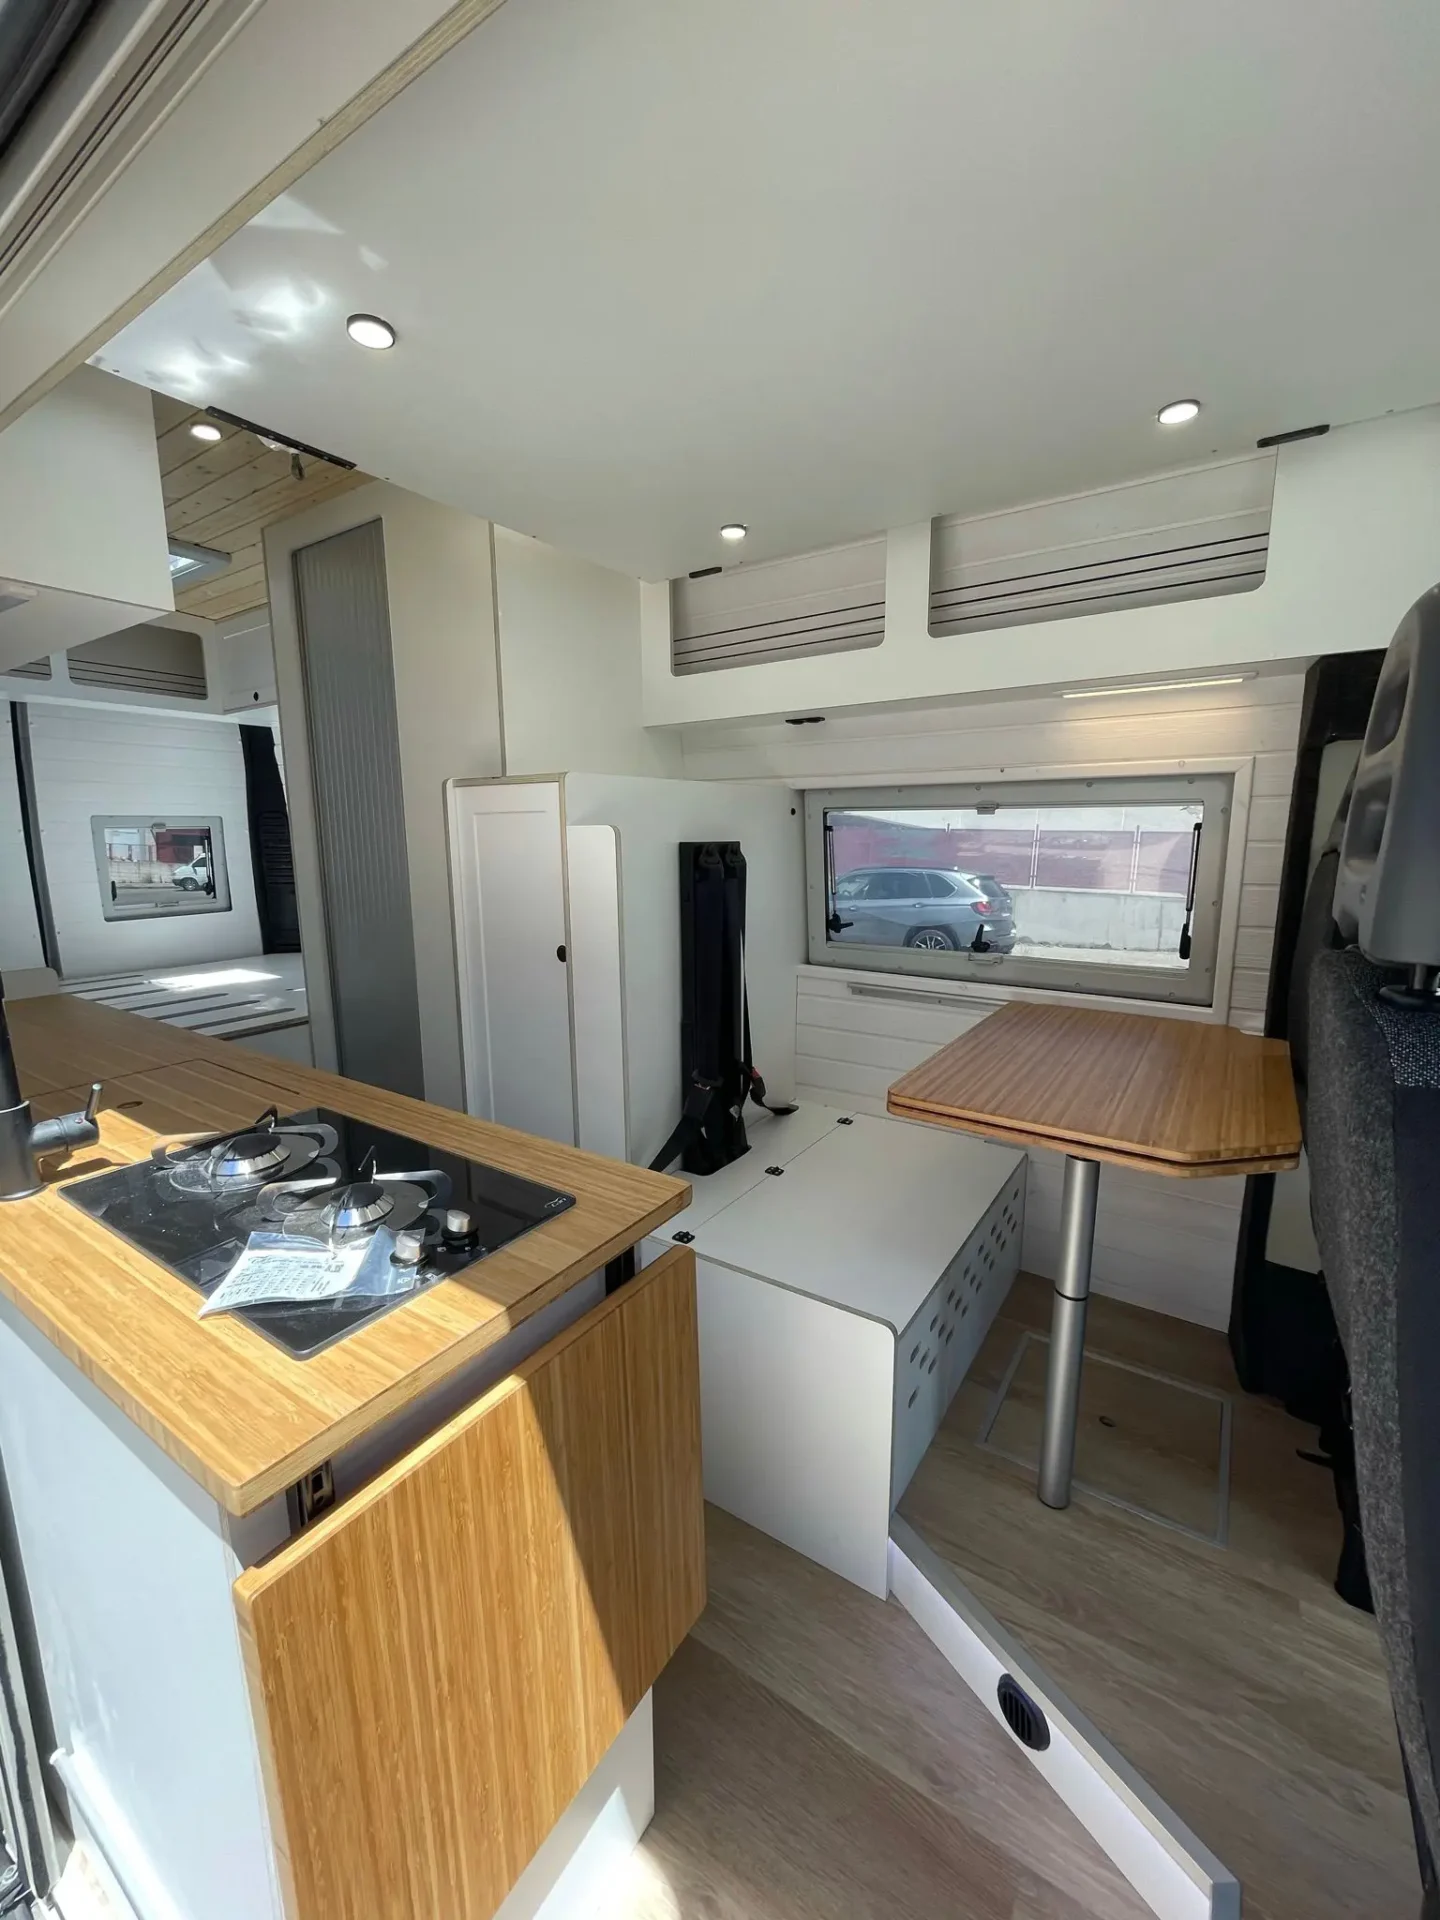 Espacio habitable multifuncional dentro de la furgoneta camper Ducato L4H3, con mesas plegables de madera, cocina integrada y áreas de almacenamiento optimizadas.